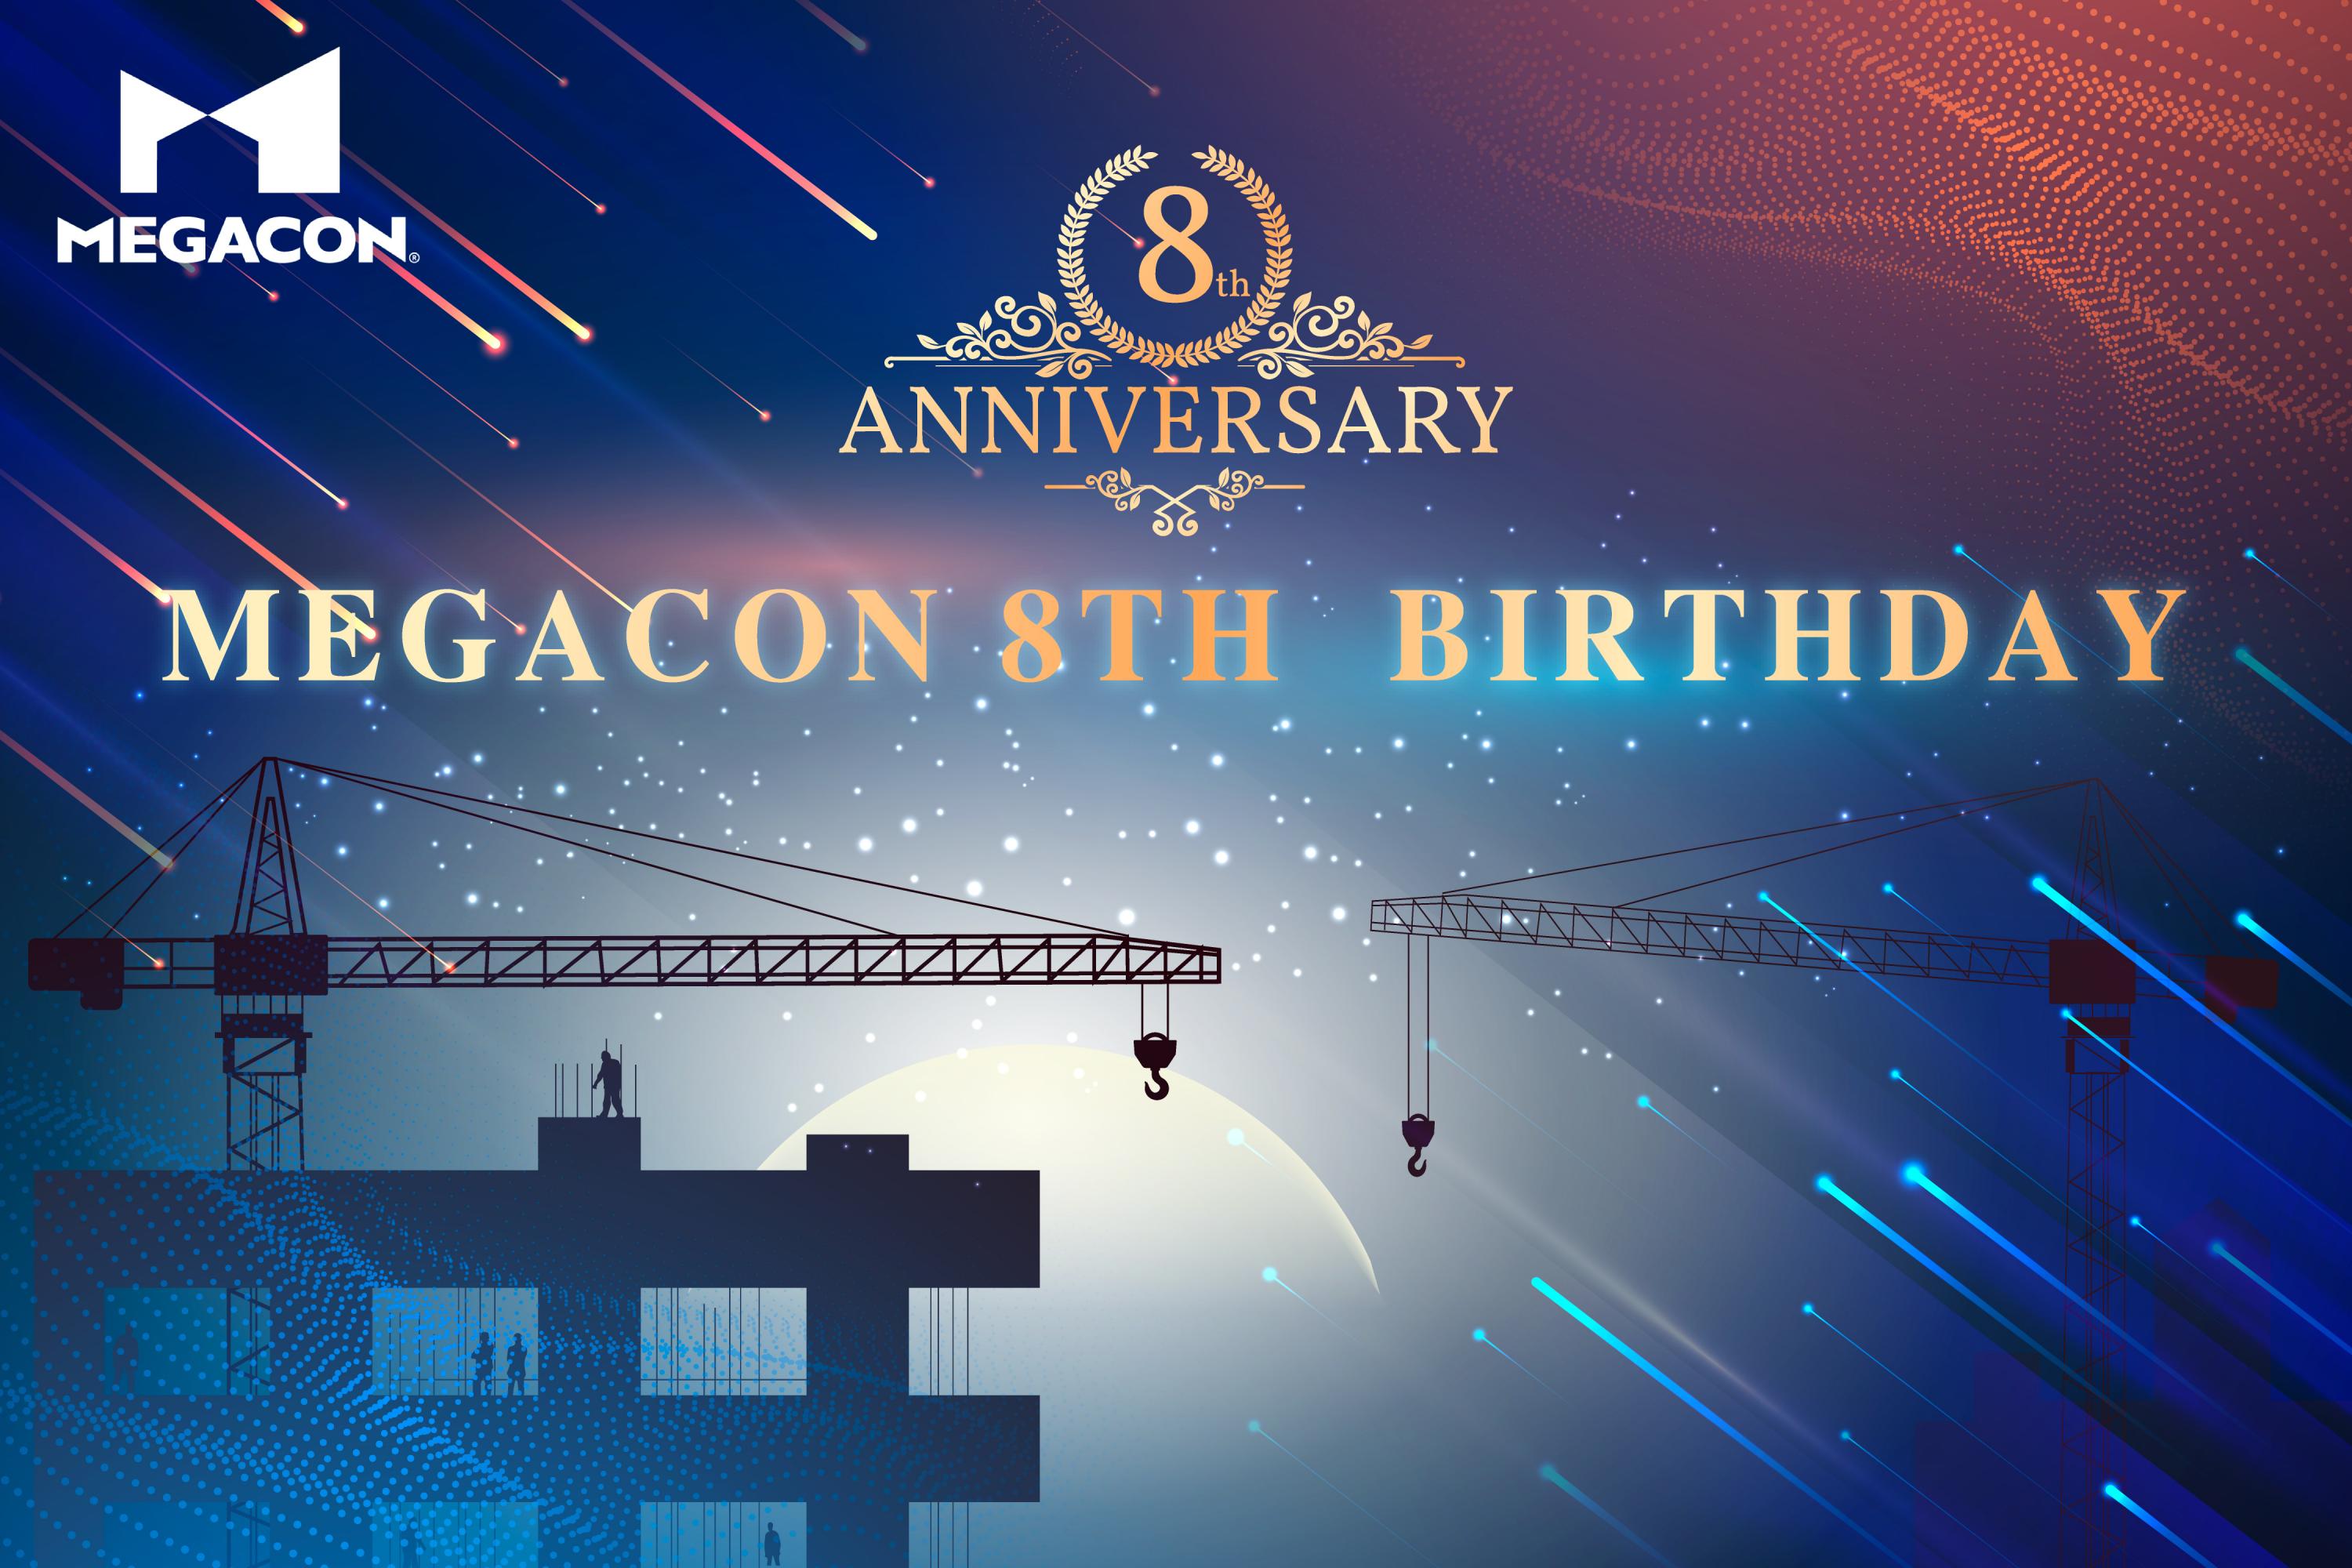 Happy anniversary MEGACON 8th birthday